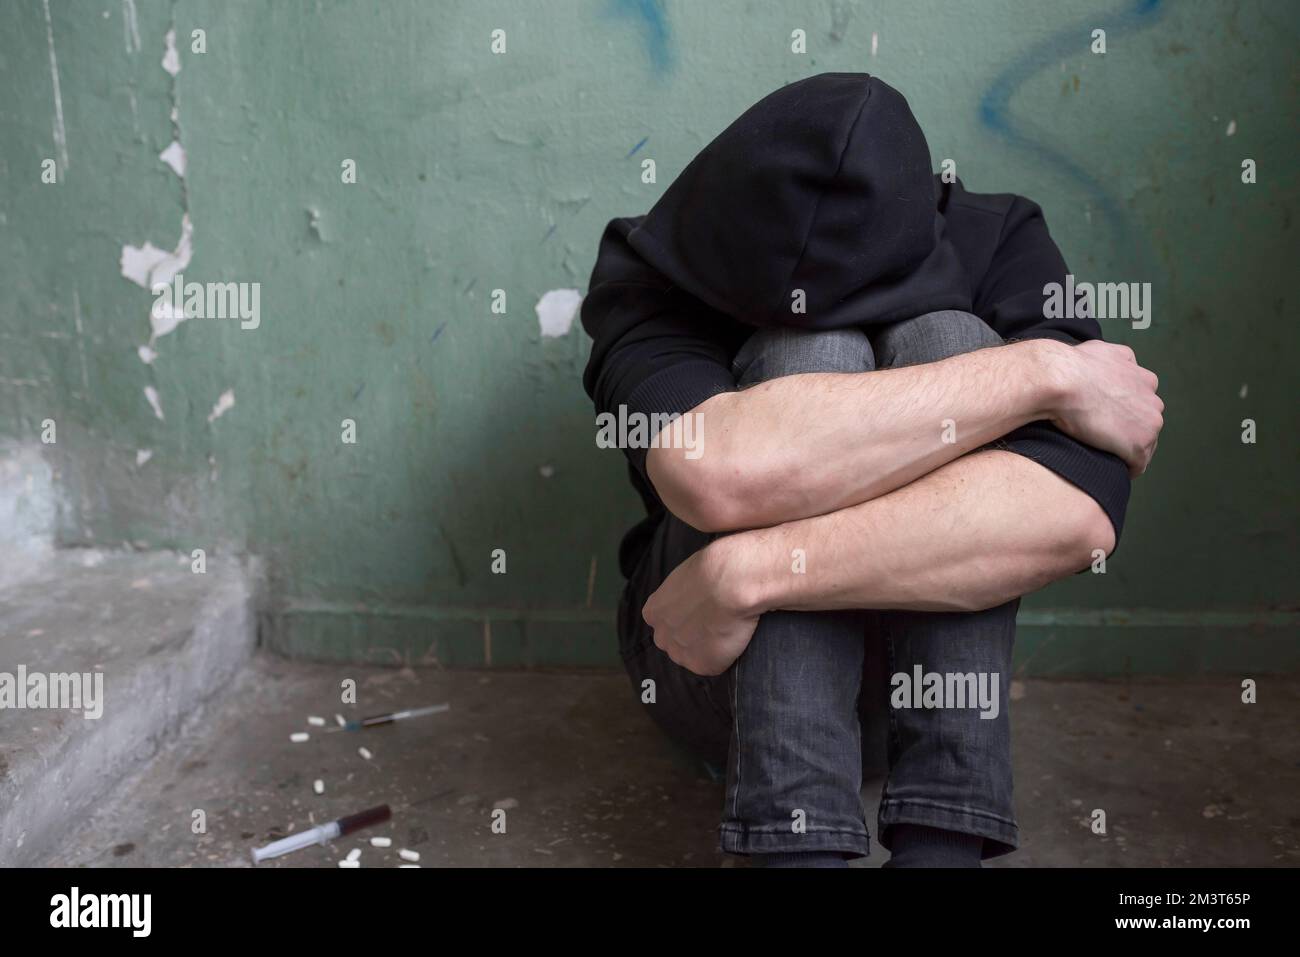 Un adolescent drogué s'assoit seul après avoir consommé de la drogue et de l'alcool dans une maison abandonnée. Concept de dépendance Banque D'Images